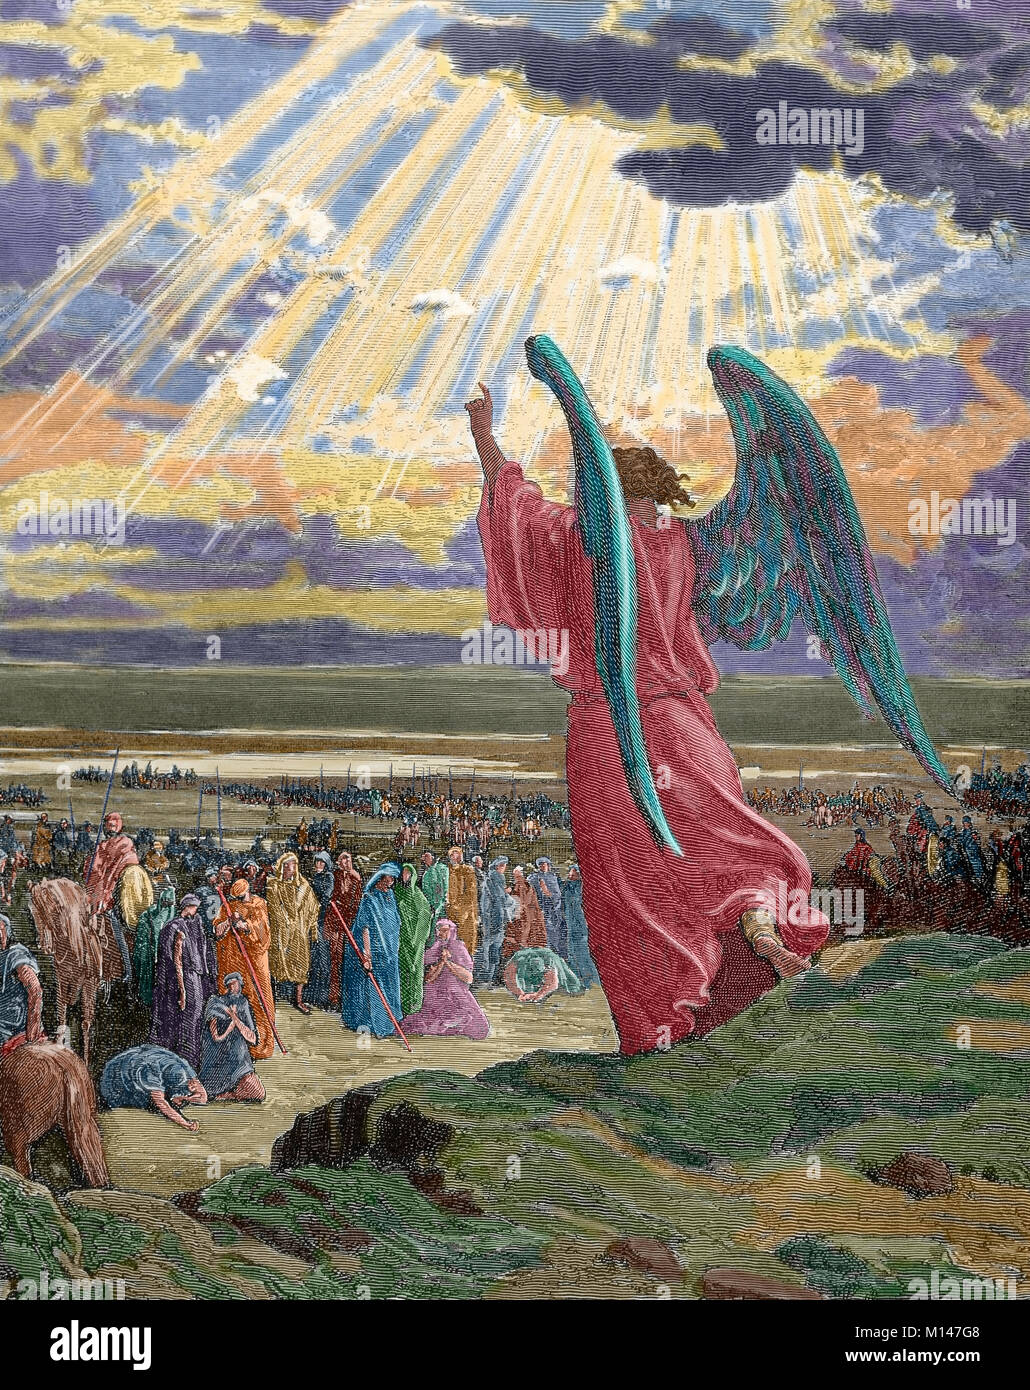 Un ange apparaît l'armée de Josué. Livre des juges. Chapitre 11, versets 1-5. Gravure de Gustave Dore (1832-1883). De couleur. Banque D'Images